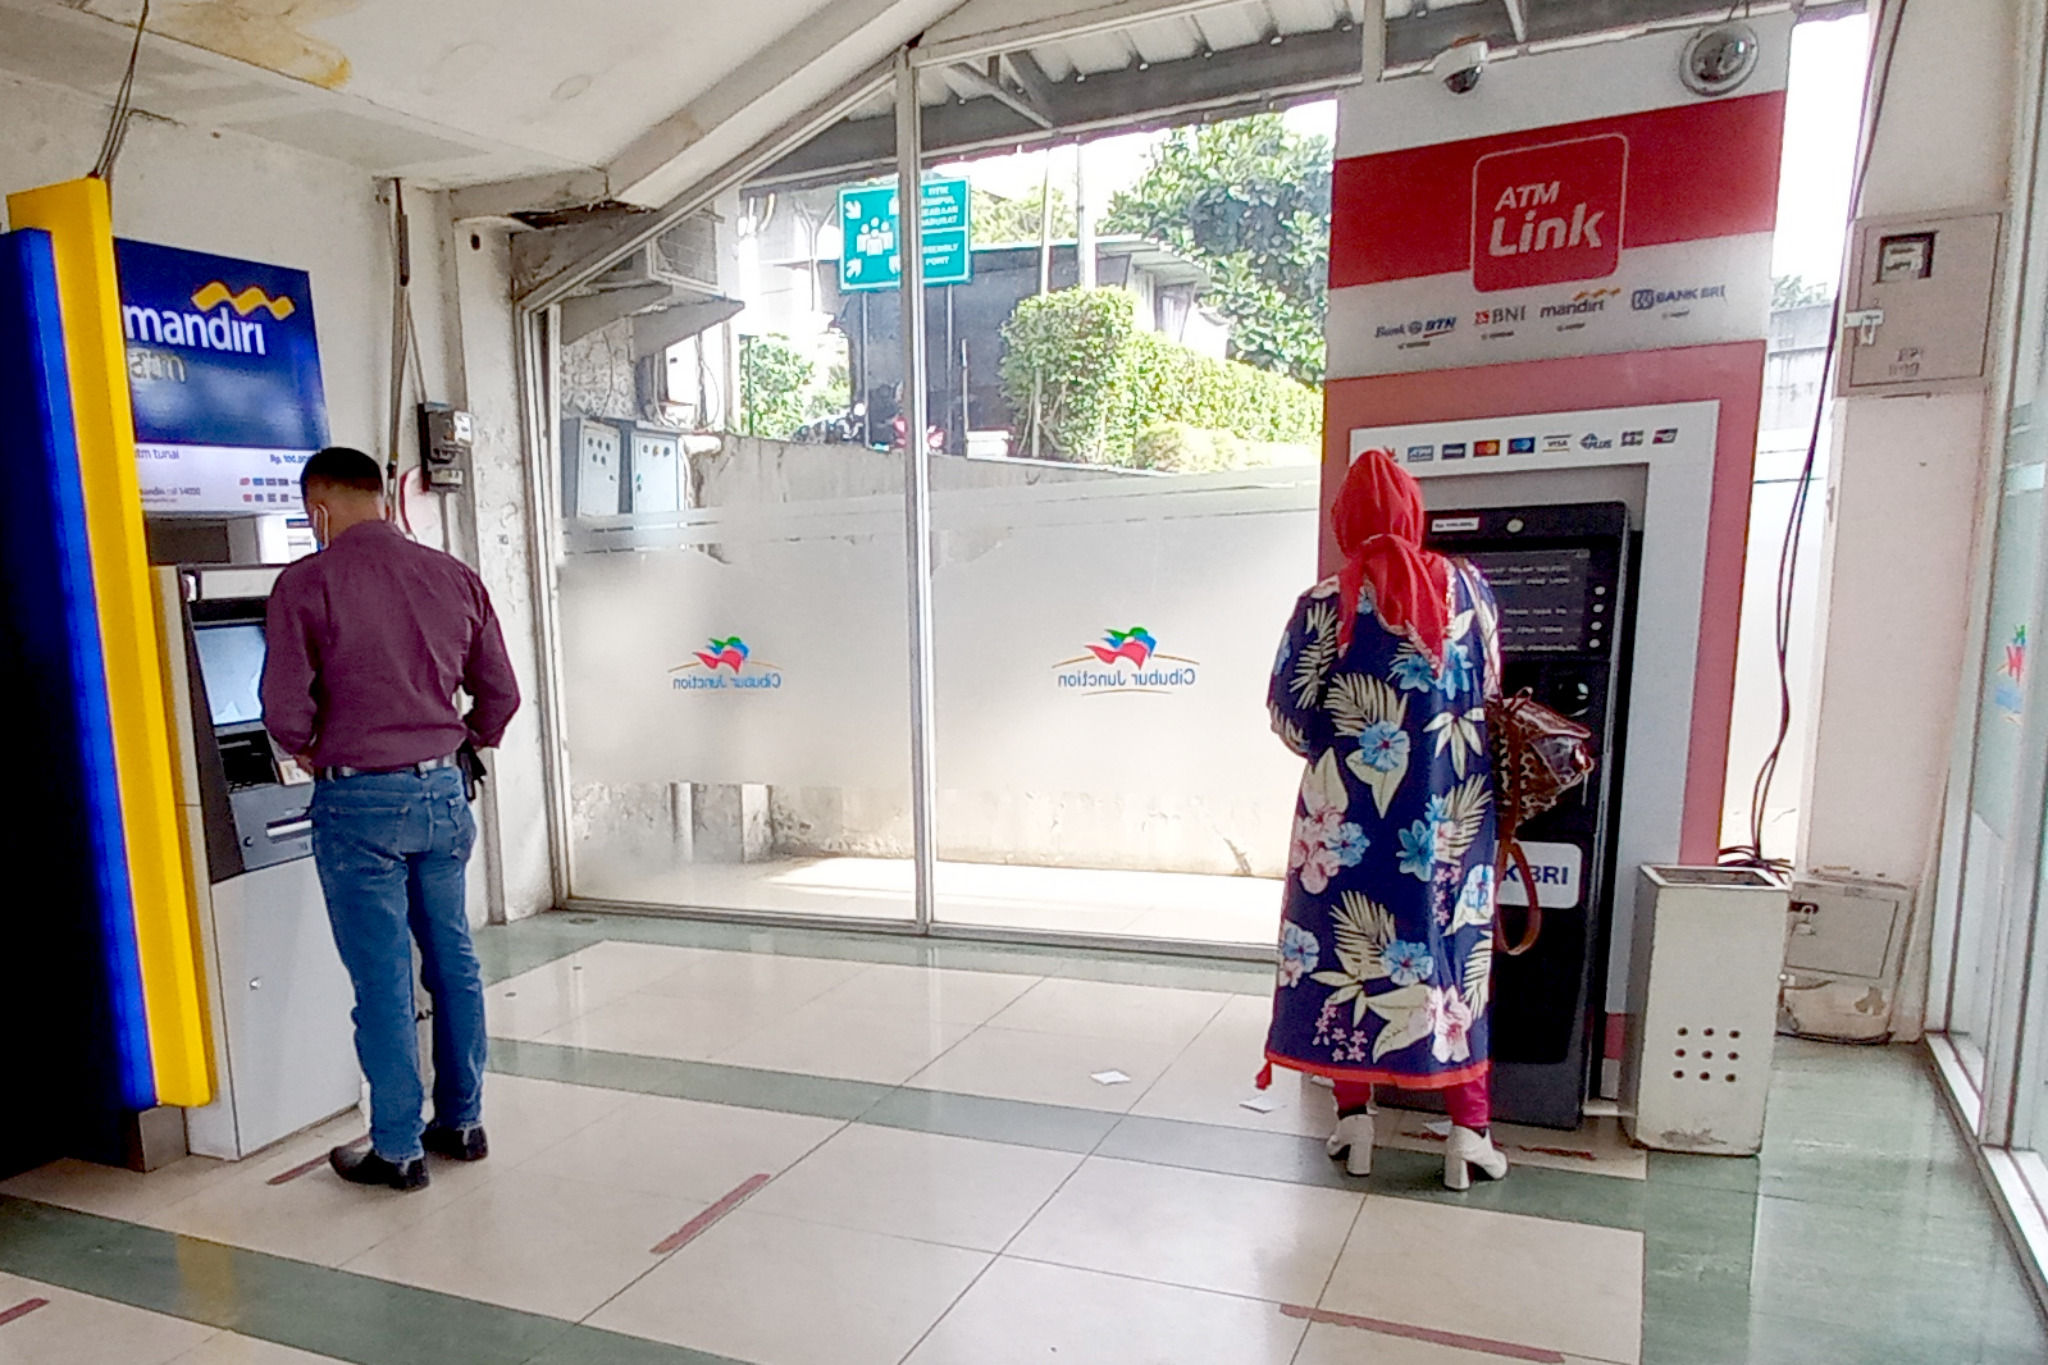 Nasabah melakukan transaksi menggunakan mesin anjungan tunai mandiri (ATM) di salah satu ATM Center di Jakarta, Kamis, 24 Februari 2022. Foto: Ismail Pohan/TrenAsia